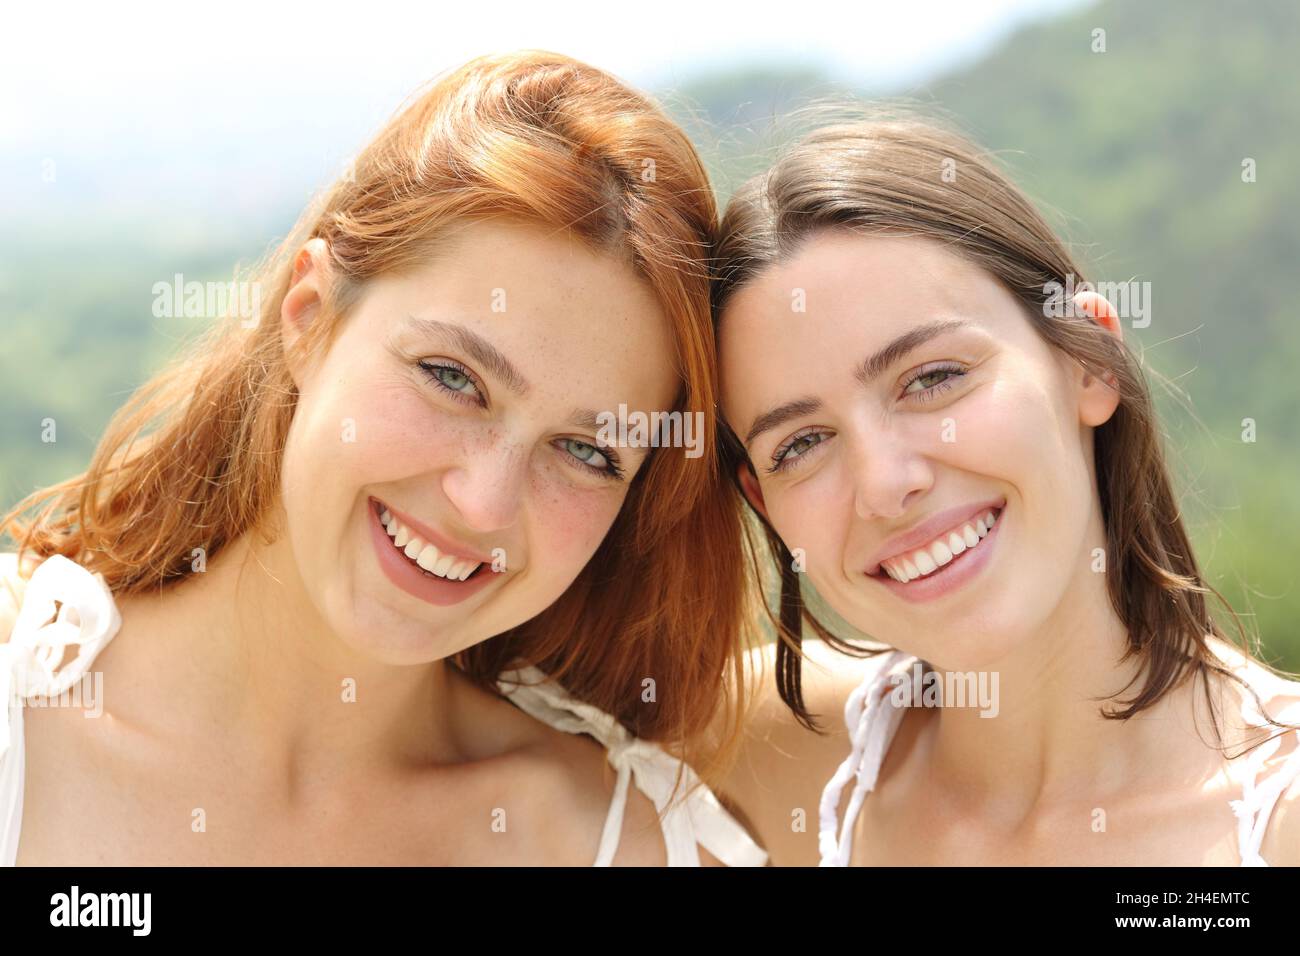 Vue avant portrait de deux amis heureux regardant l'appareil photo sourire Banque D'Images